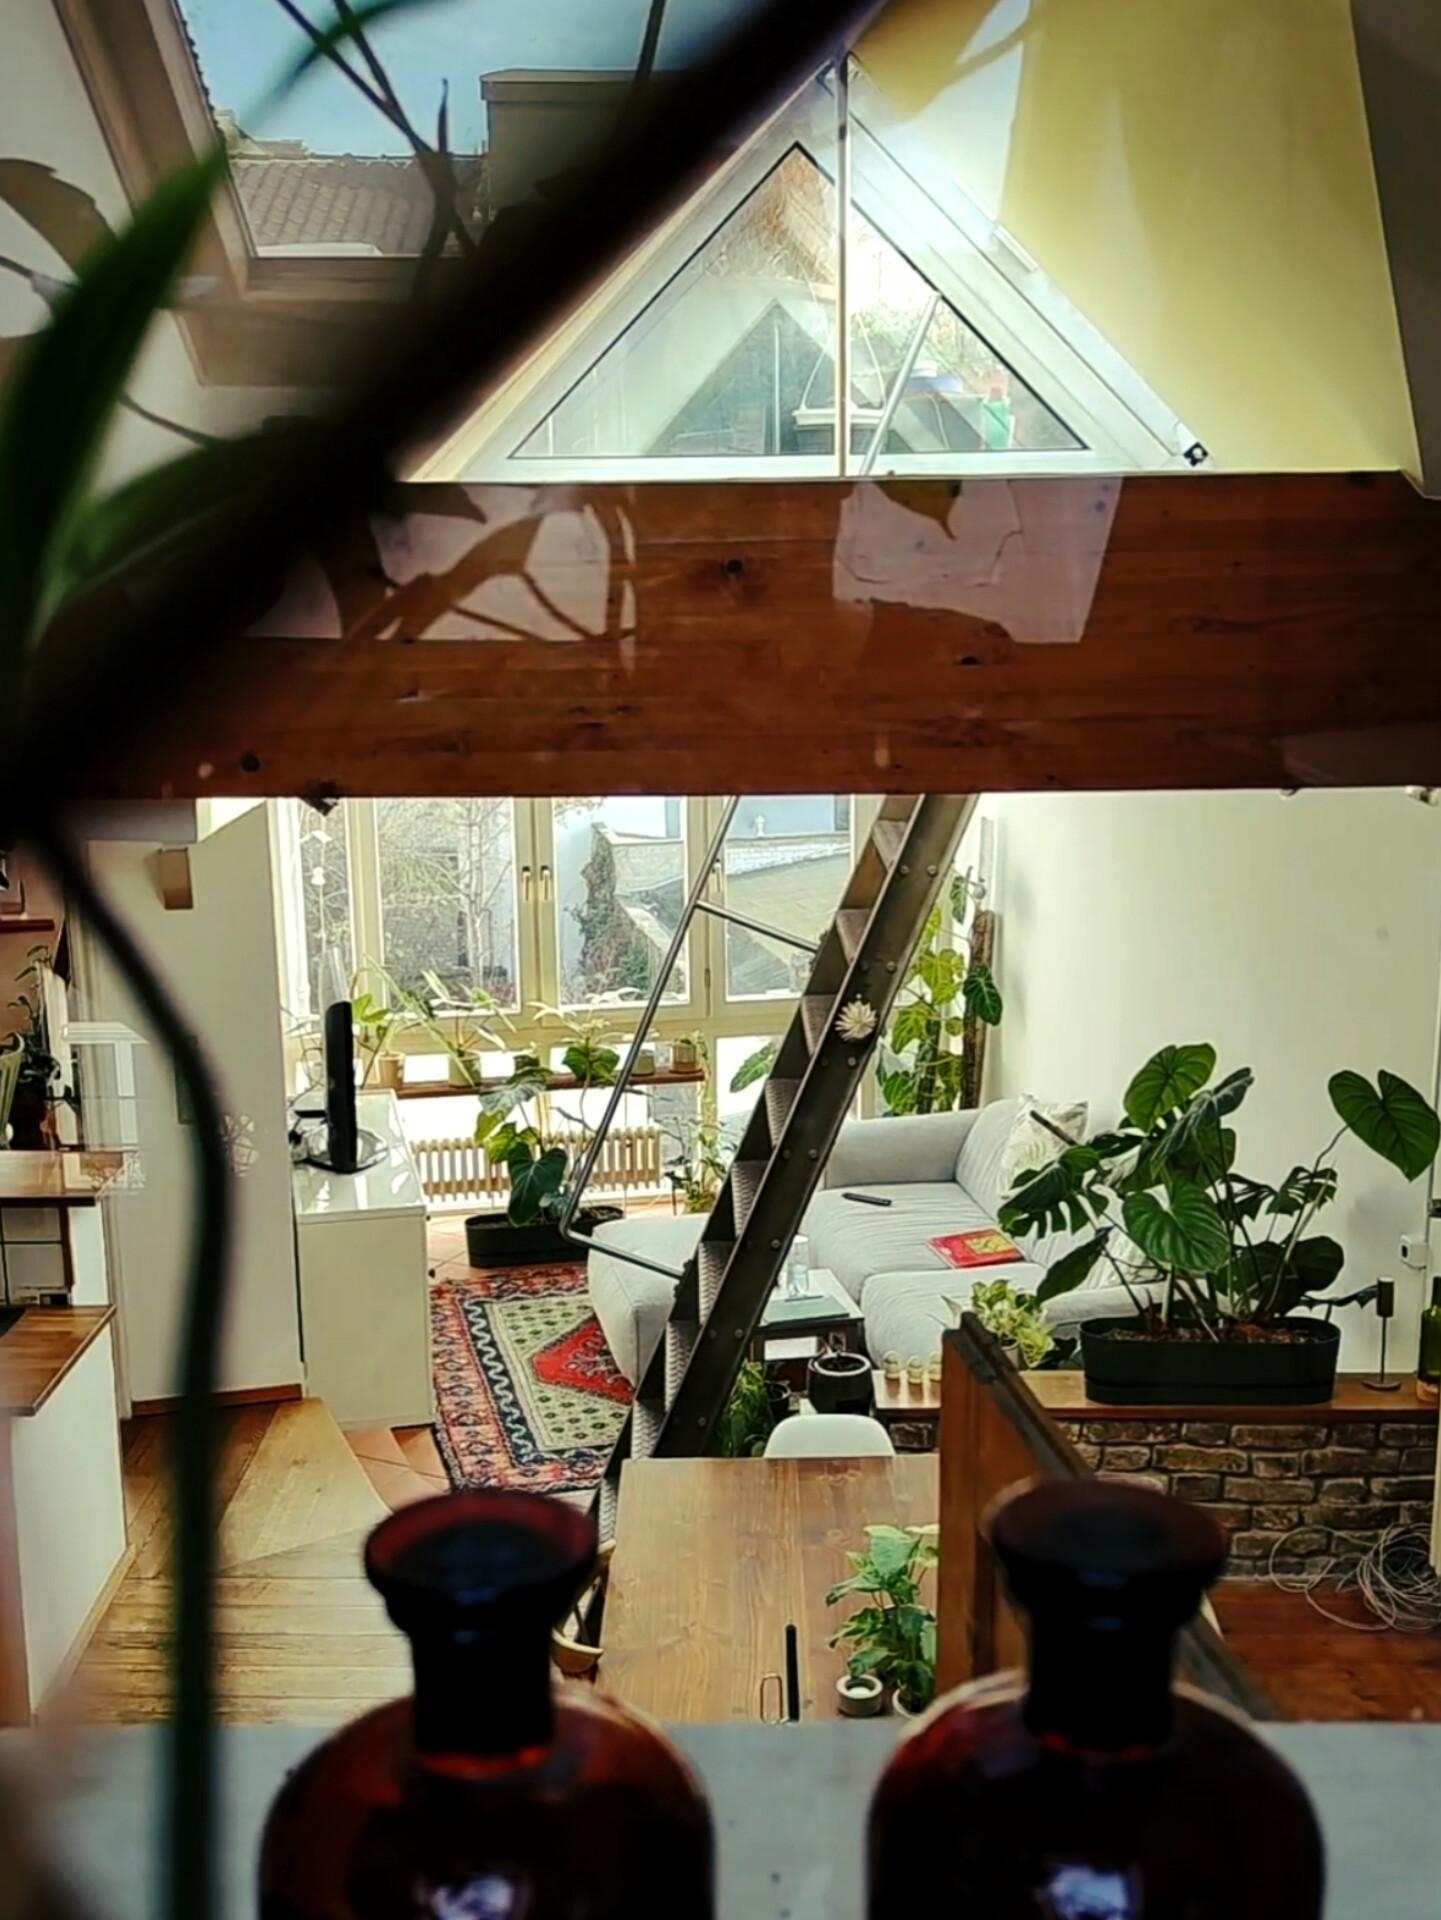 different perspective #wohnzimmer #urbanjungle #loft